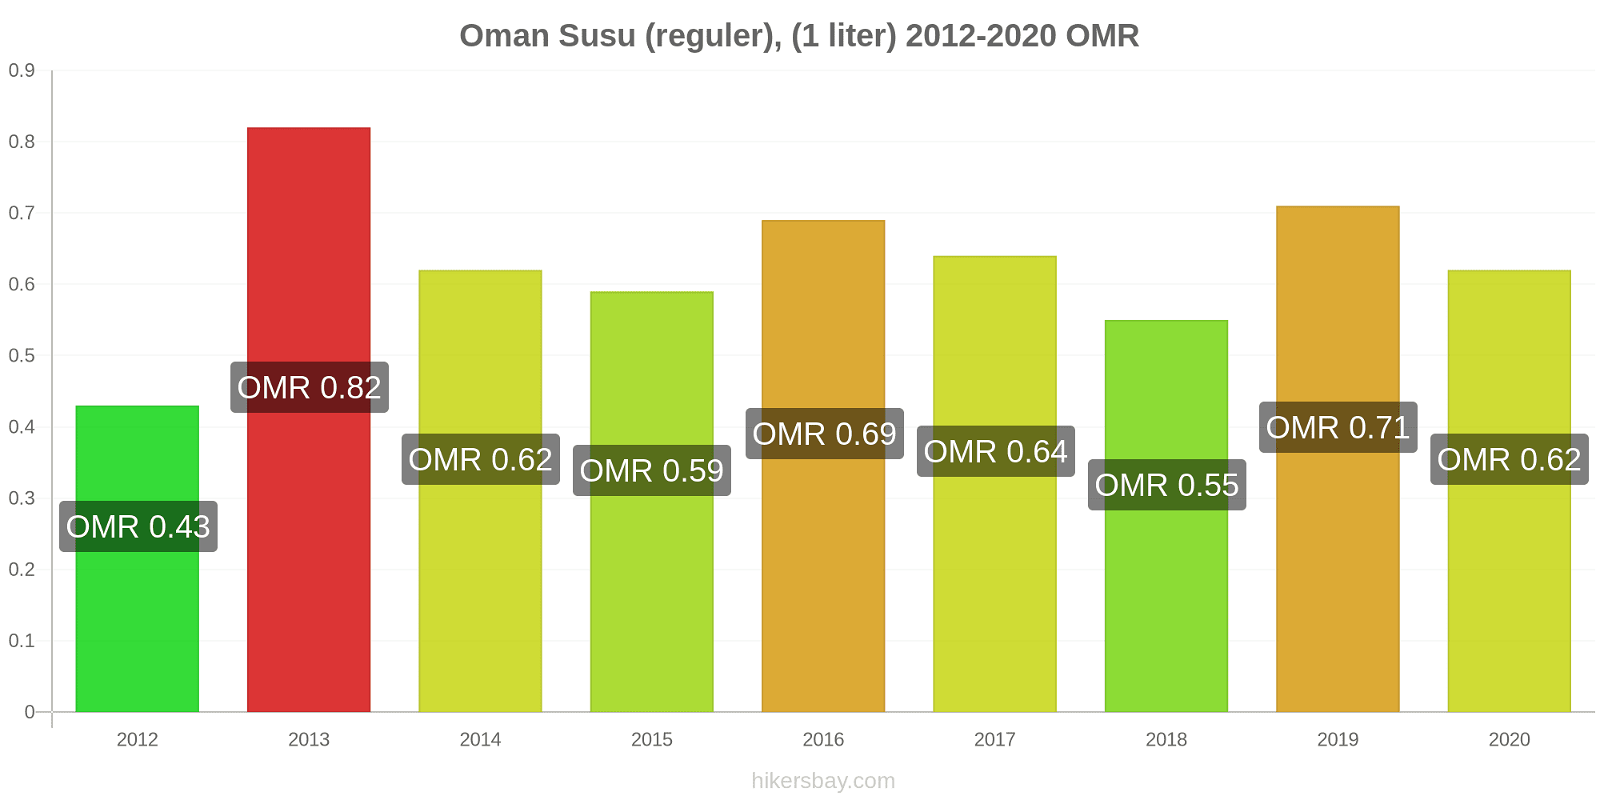 Oman perubahan harga Susu (reguler), (1 liter) hikersbay.com